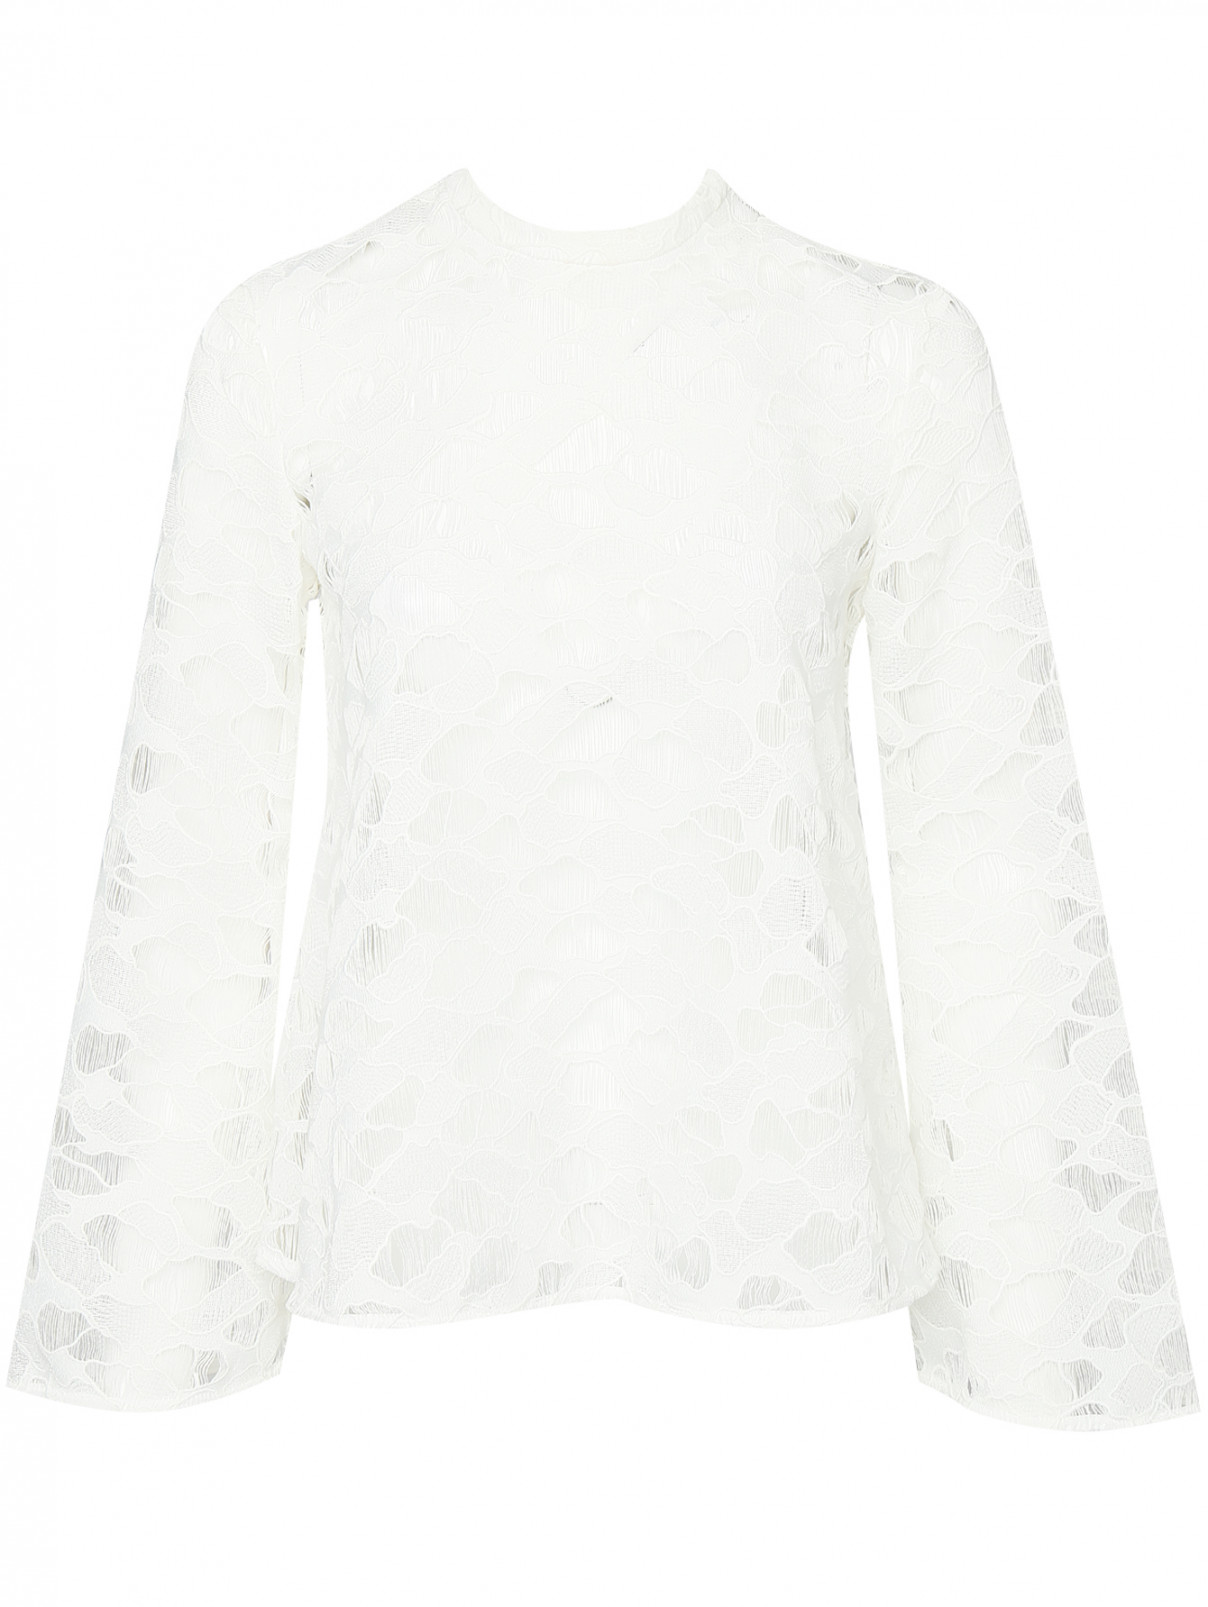 Полупрозрачная блуза свободного кроя Keepsake  –  Общий вид  – Цвет:  Белый